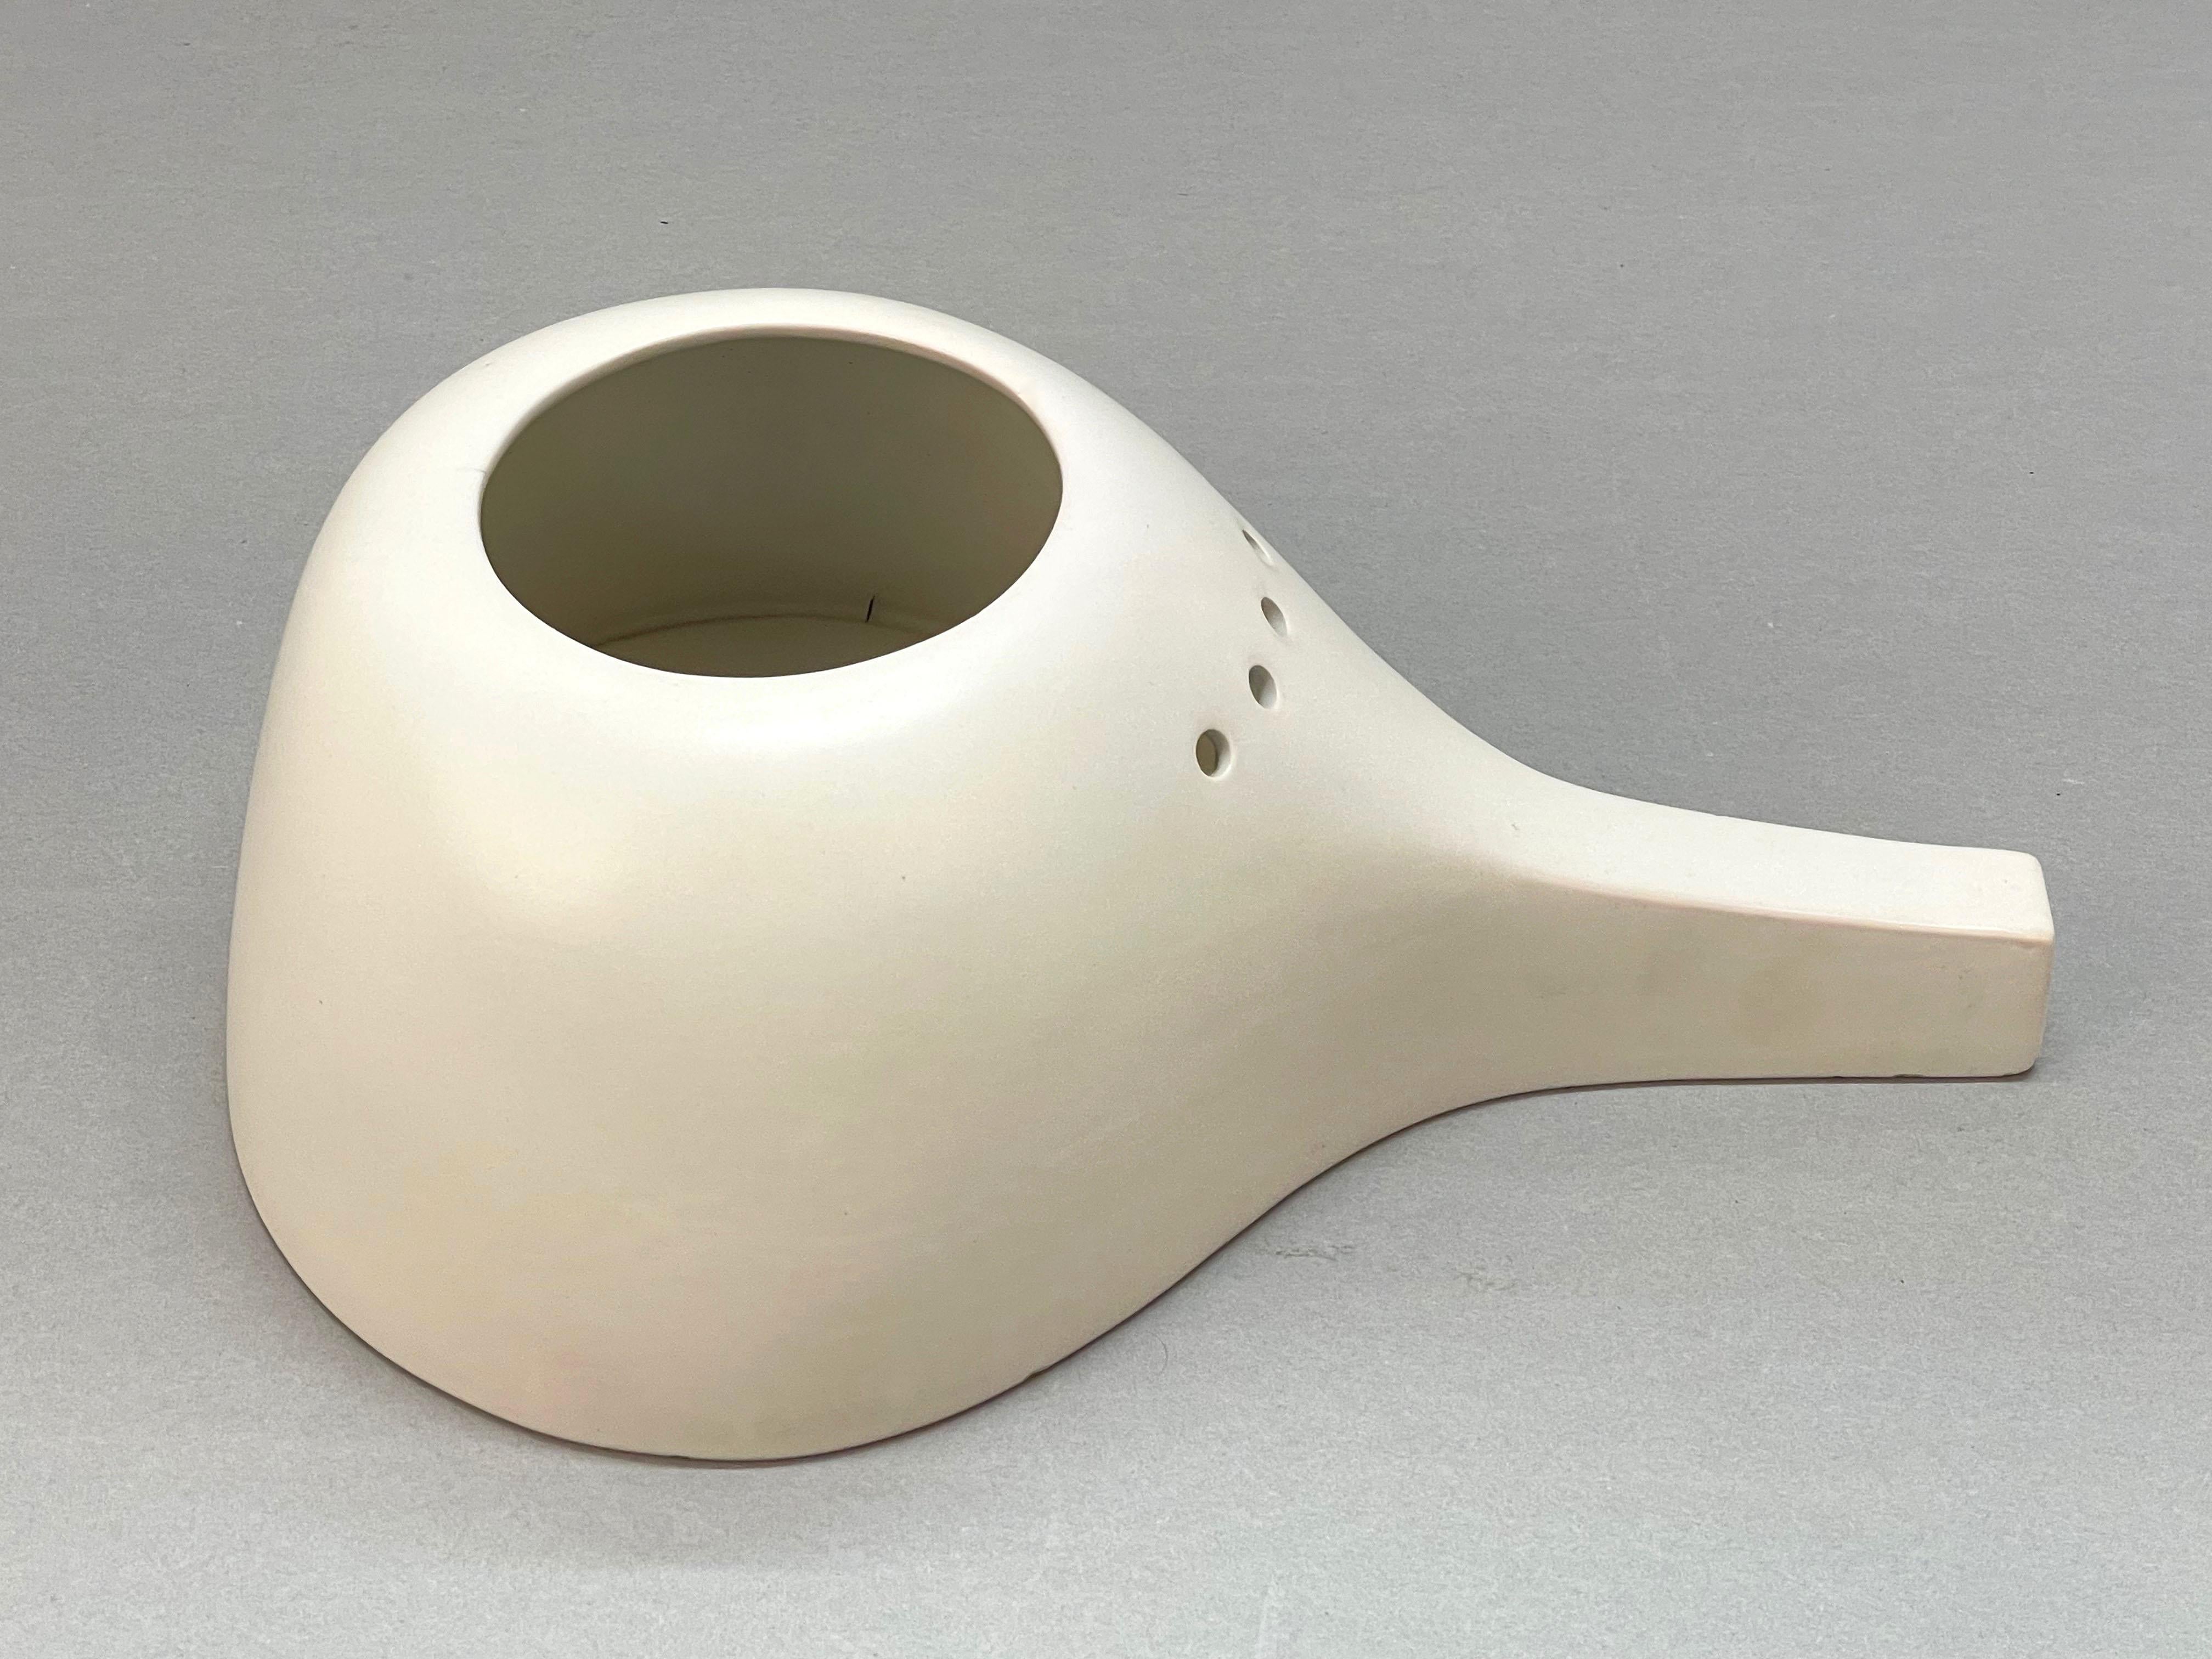 Étonnant vase en céramique blanche du milieu du siècle dernier. Cette pièce fantastique a été conçue en Italie dans les années 1960 par ZS pour une production de Bassano del Grappa.

Son authenticité est visible sur la signature arrière, où il